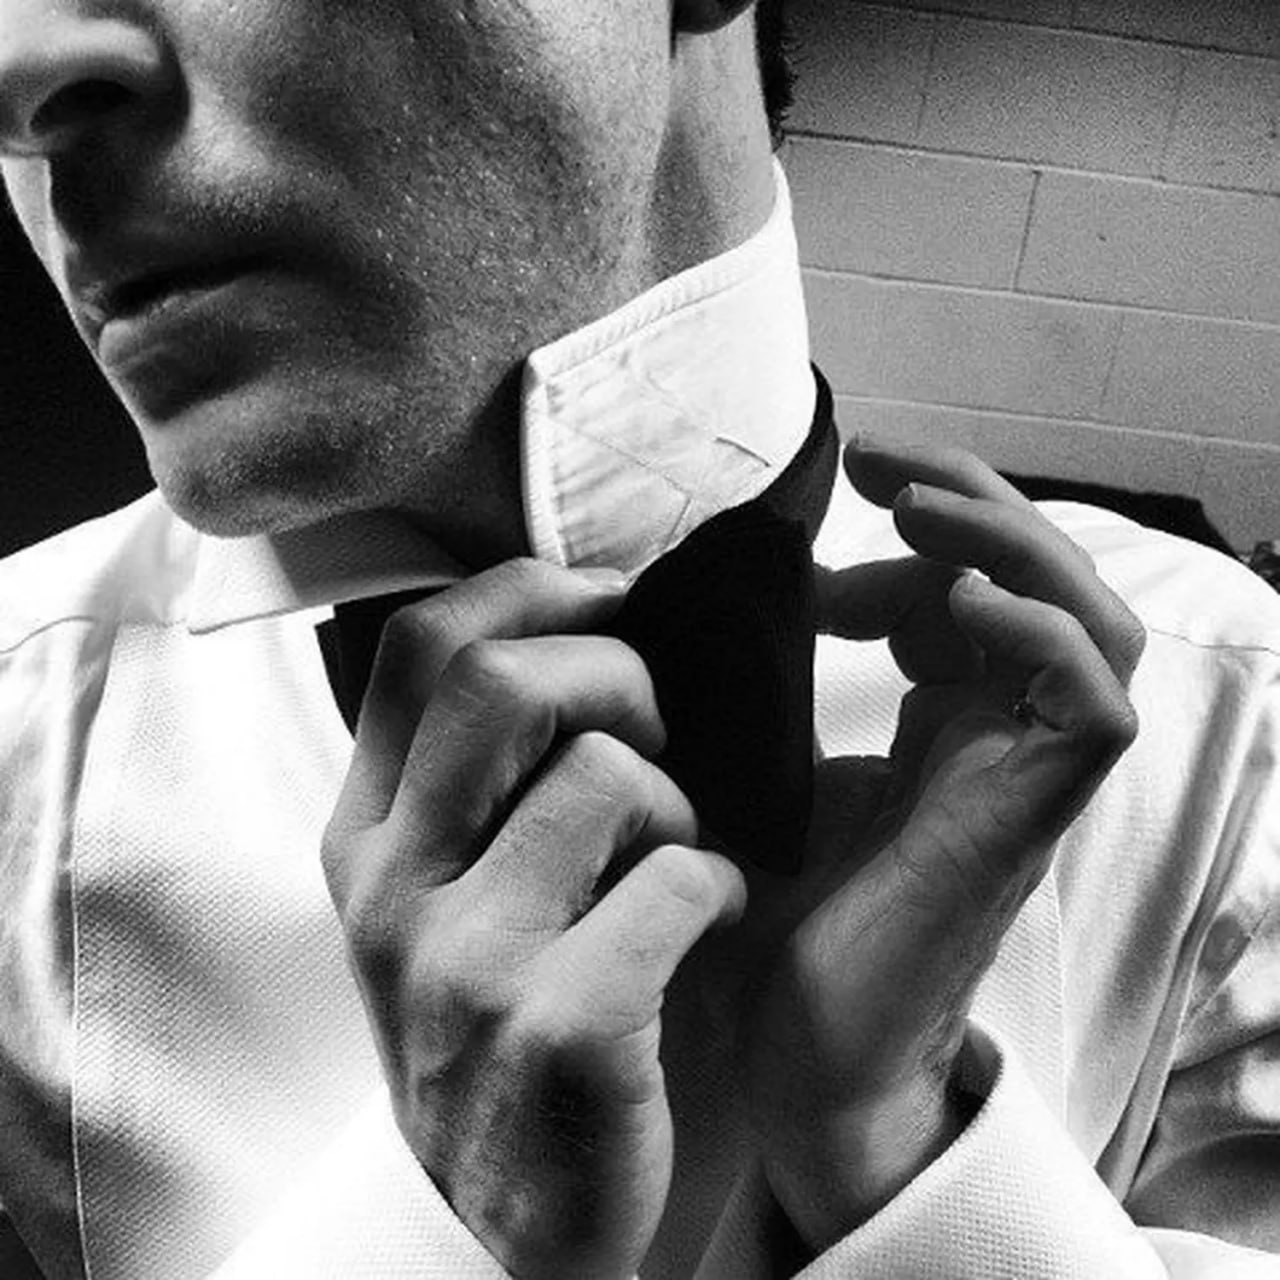 Руки завязанные галстуком